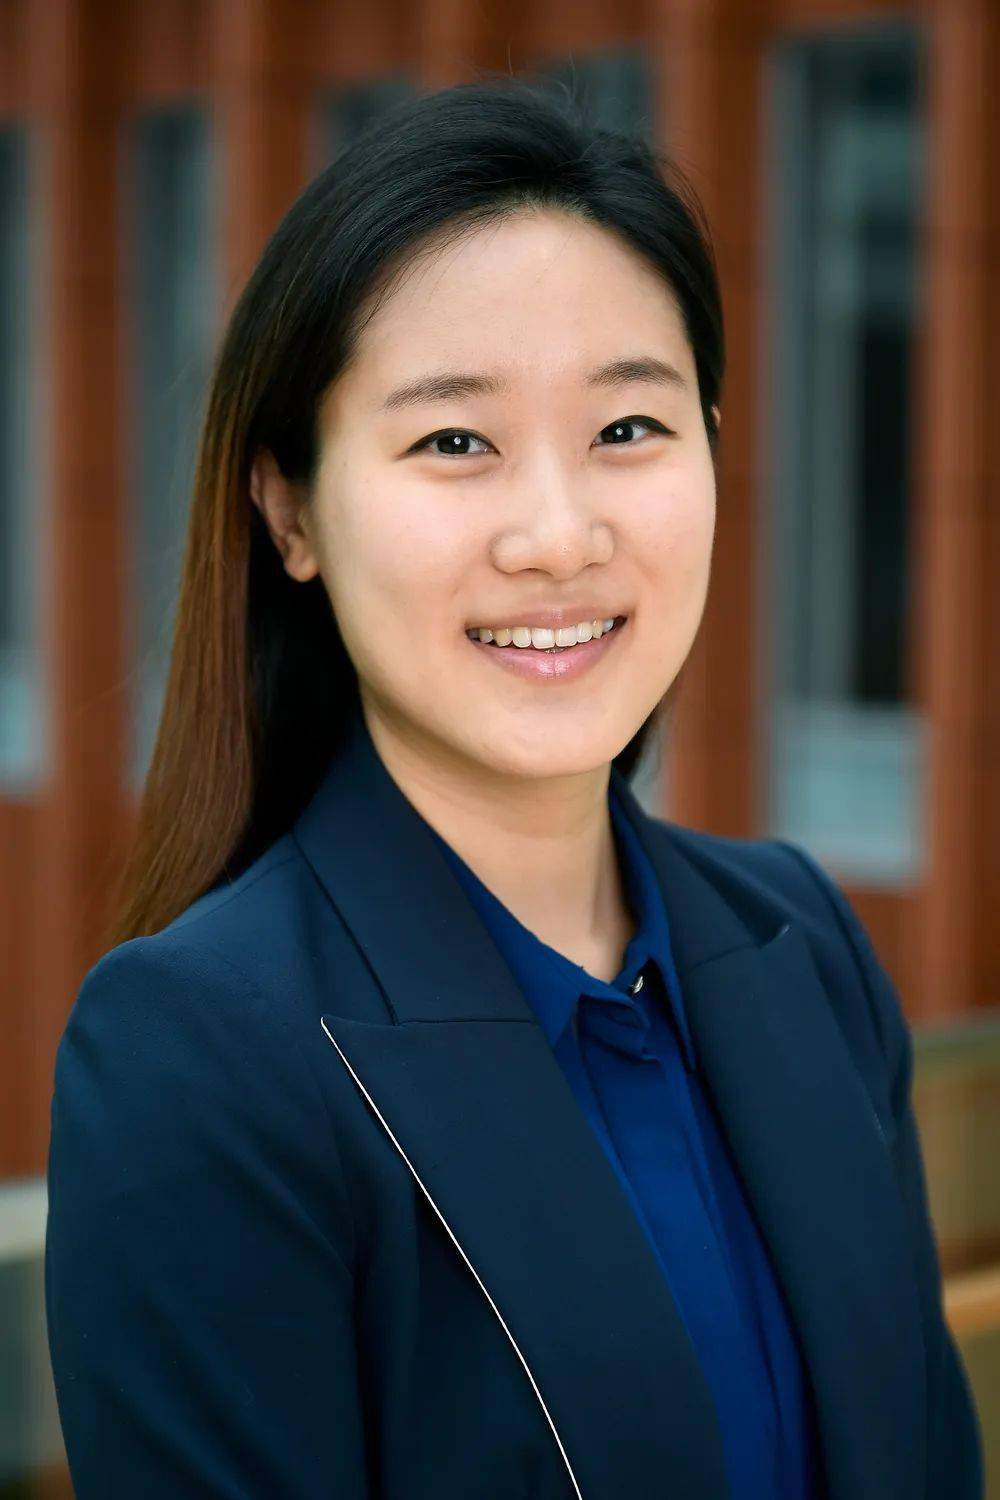 博士(dr eun woo kim)来自韩国,她在韩国延世大学获得本科和硕士学位